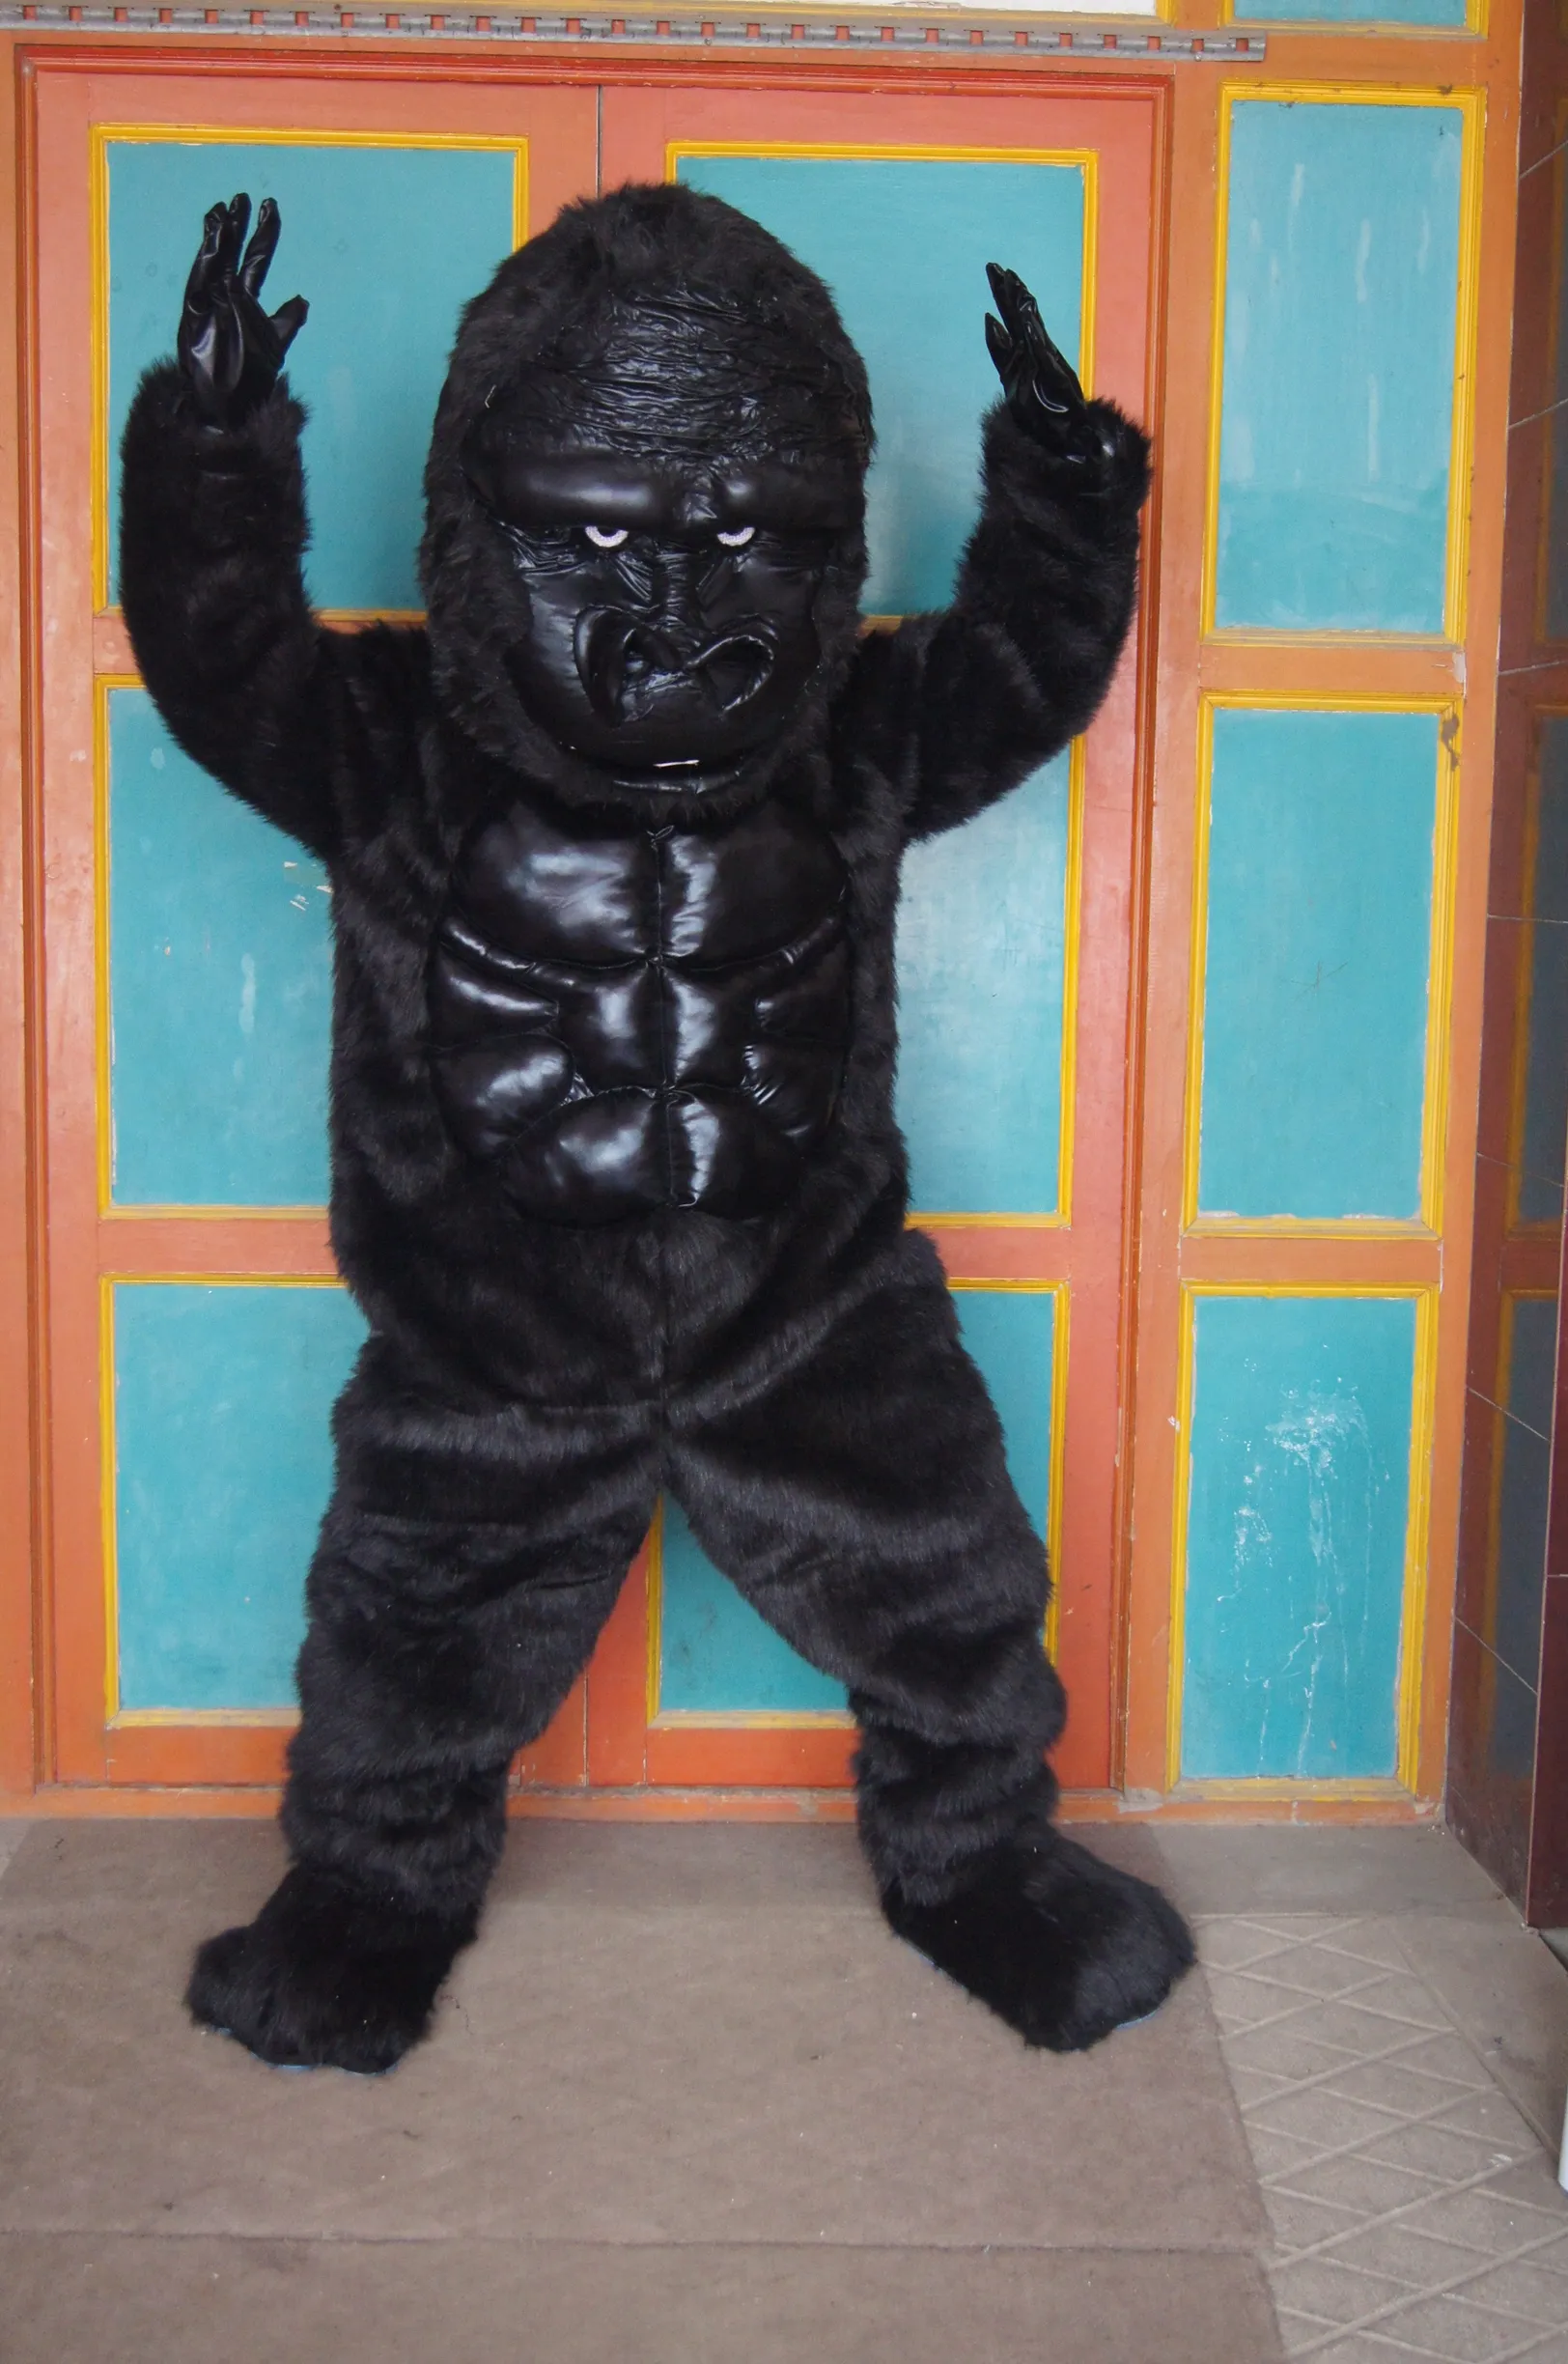 Vente chaude personnage de film de dessin animé véritable orang-outan gorille chimpanzé jocko chimpanzé mascotte costume taille adulte livraison gratuite